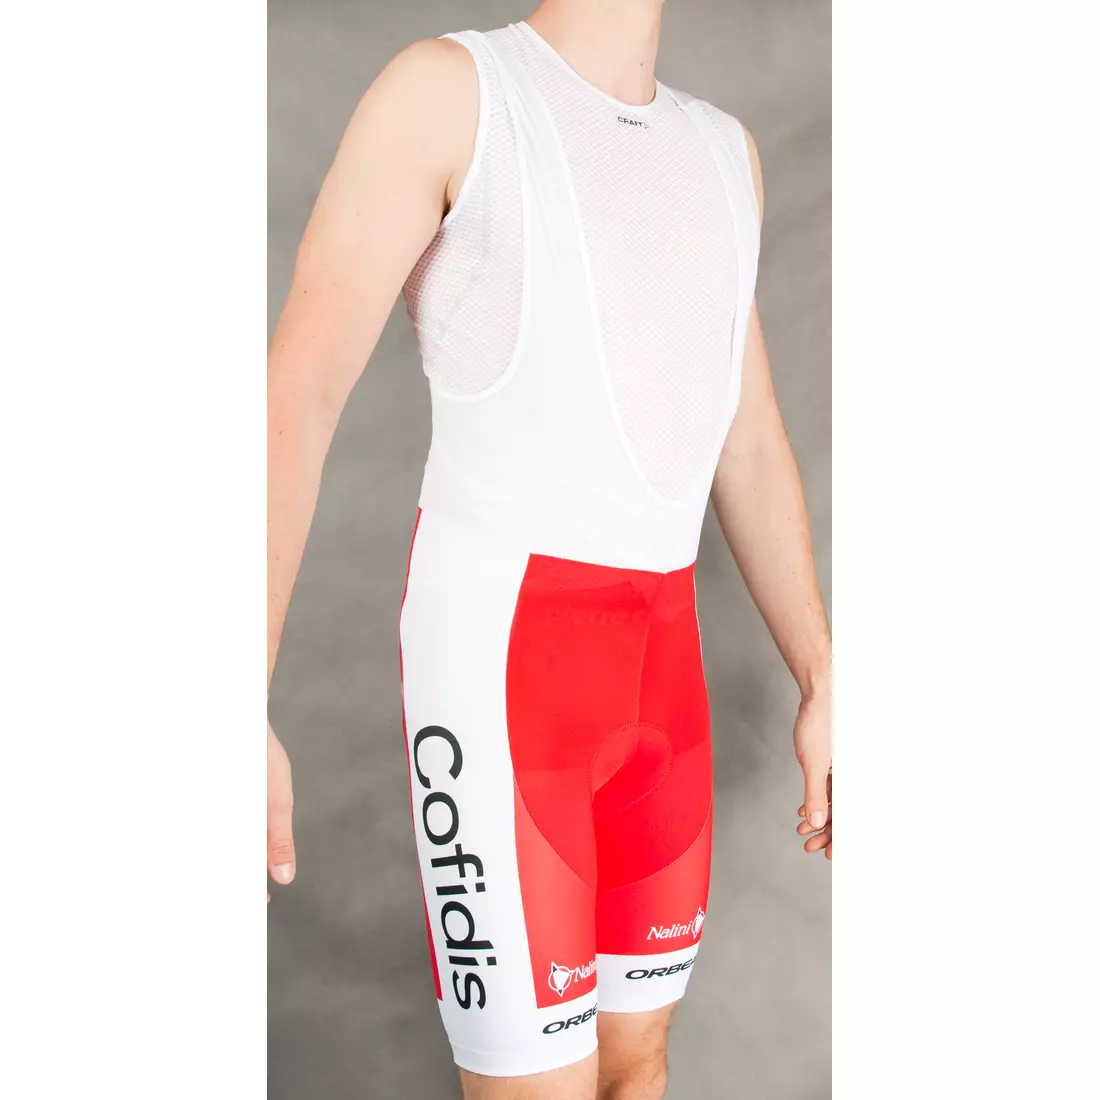 COFIDIS 2015 cycling shorts